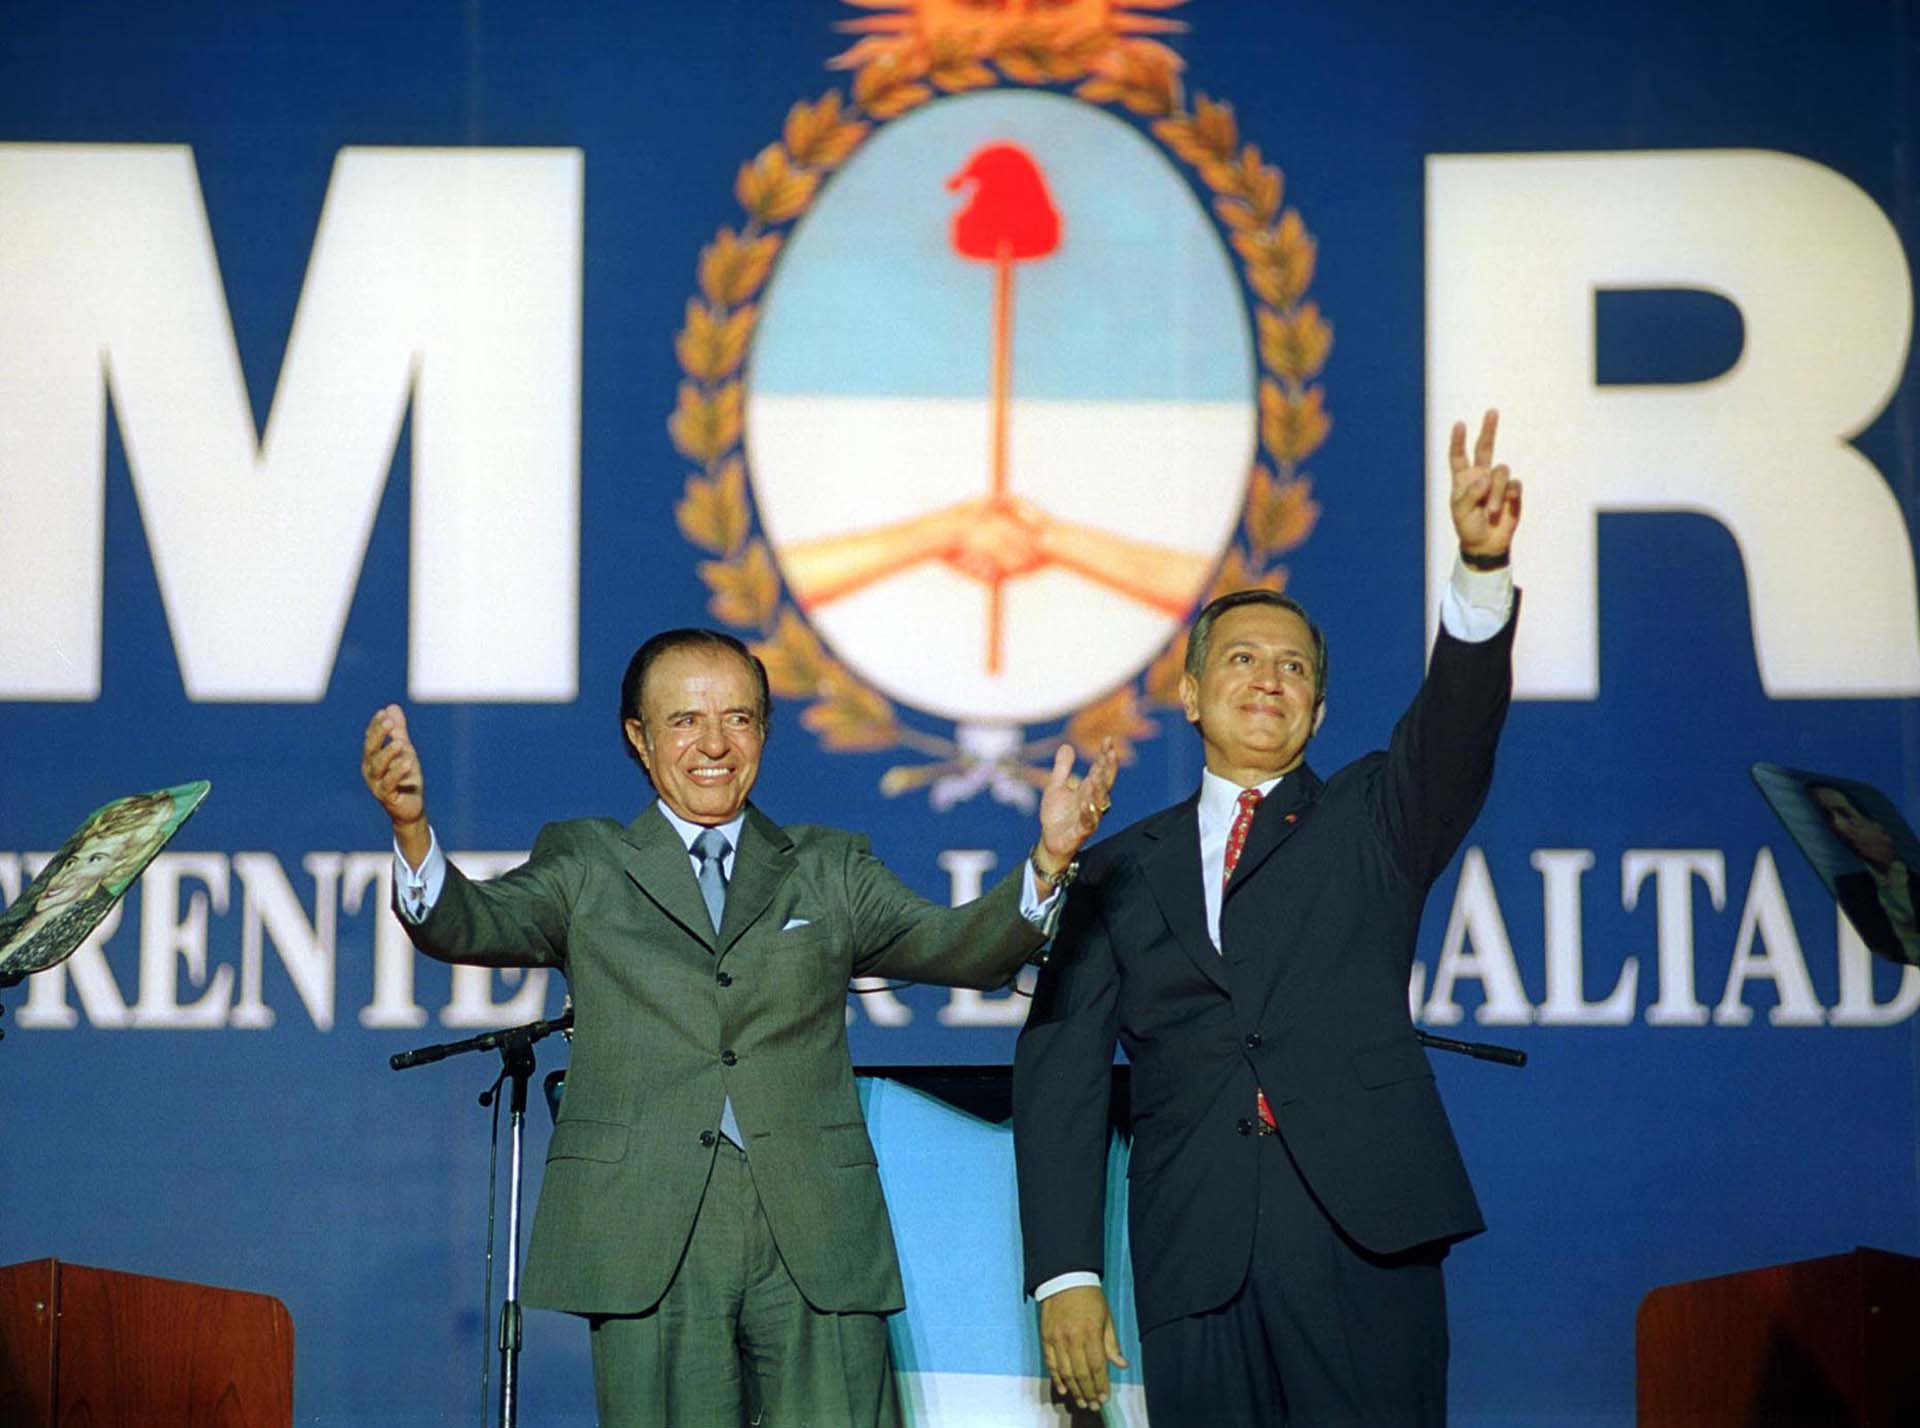 Elecciones 2003: La fórmula del Frente por la Lealtad. Carlos Menem y Juan Carlos Romero saludan durante el acto de cierre de campaña realizado en el estadio de River Plate